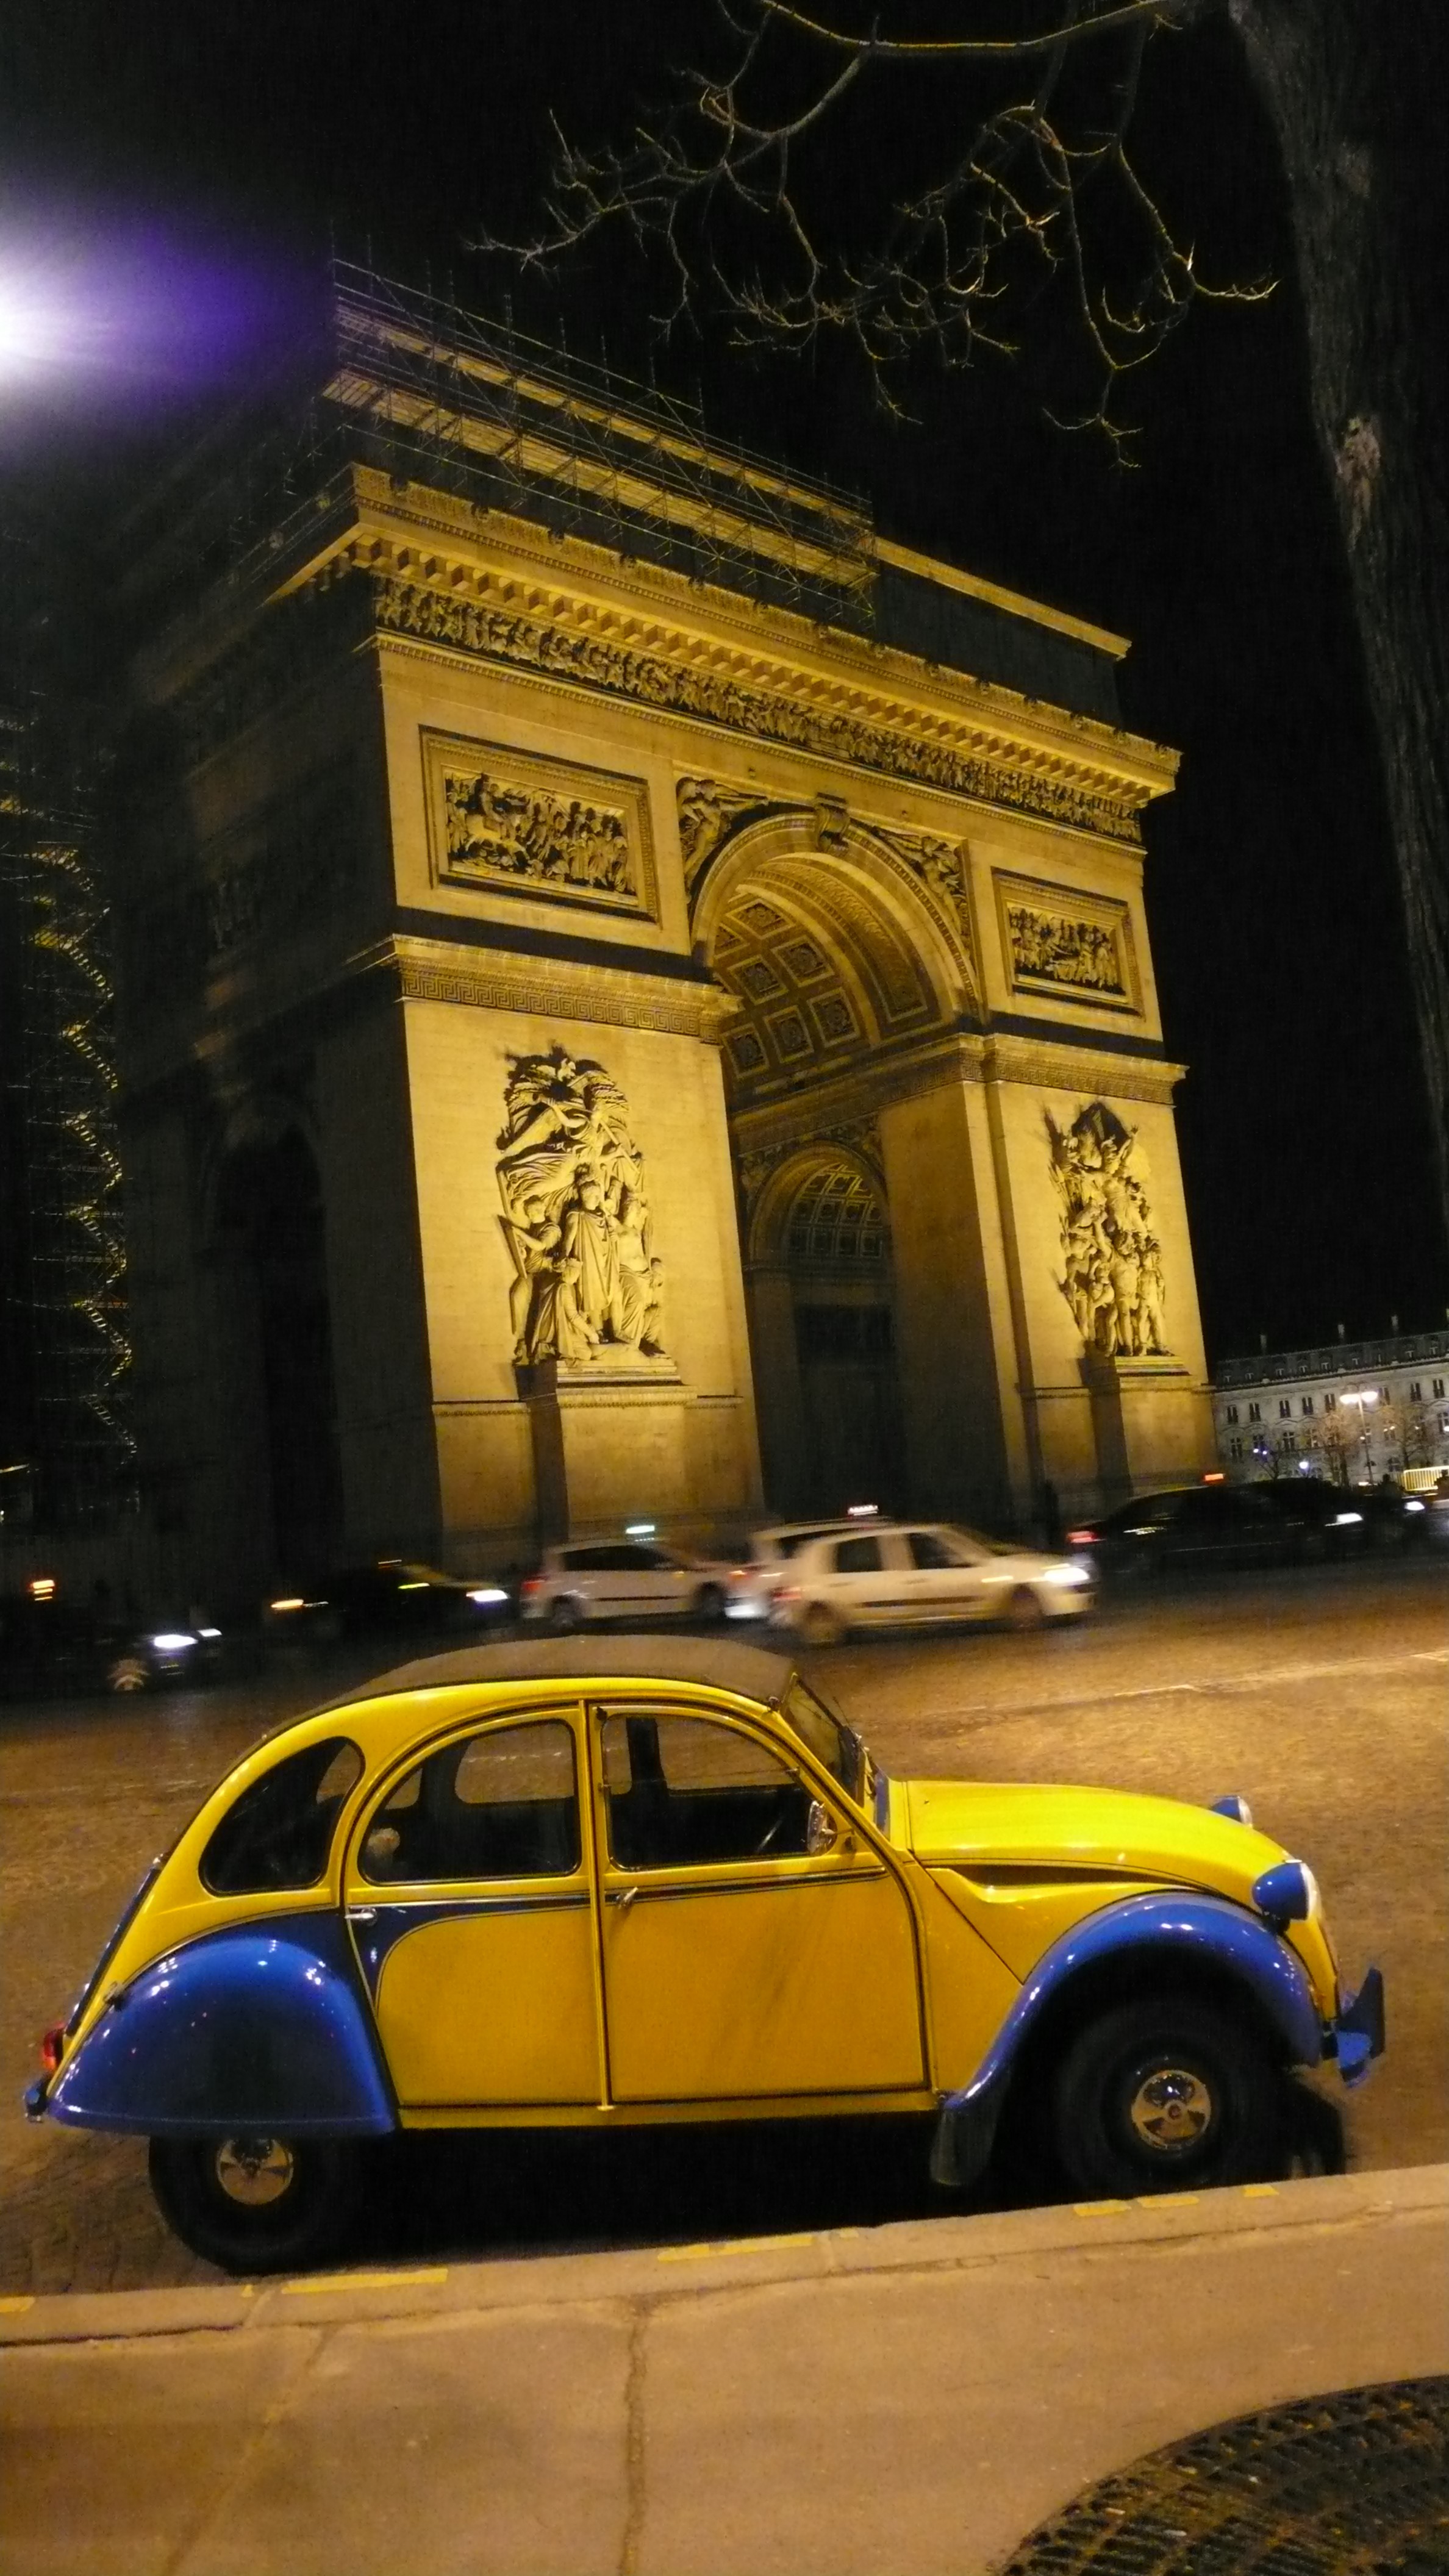 2CV Paris Tour : Visit Paris by 2CV! The Arc de Triomphe by 2CV